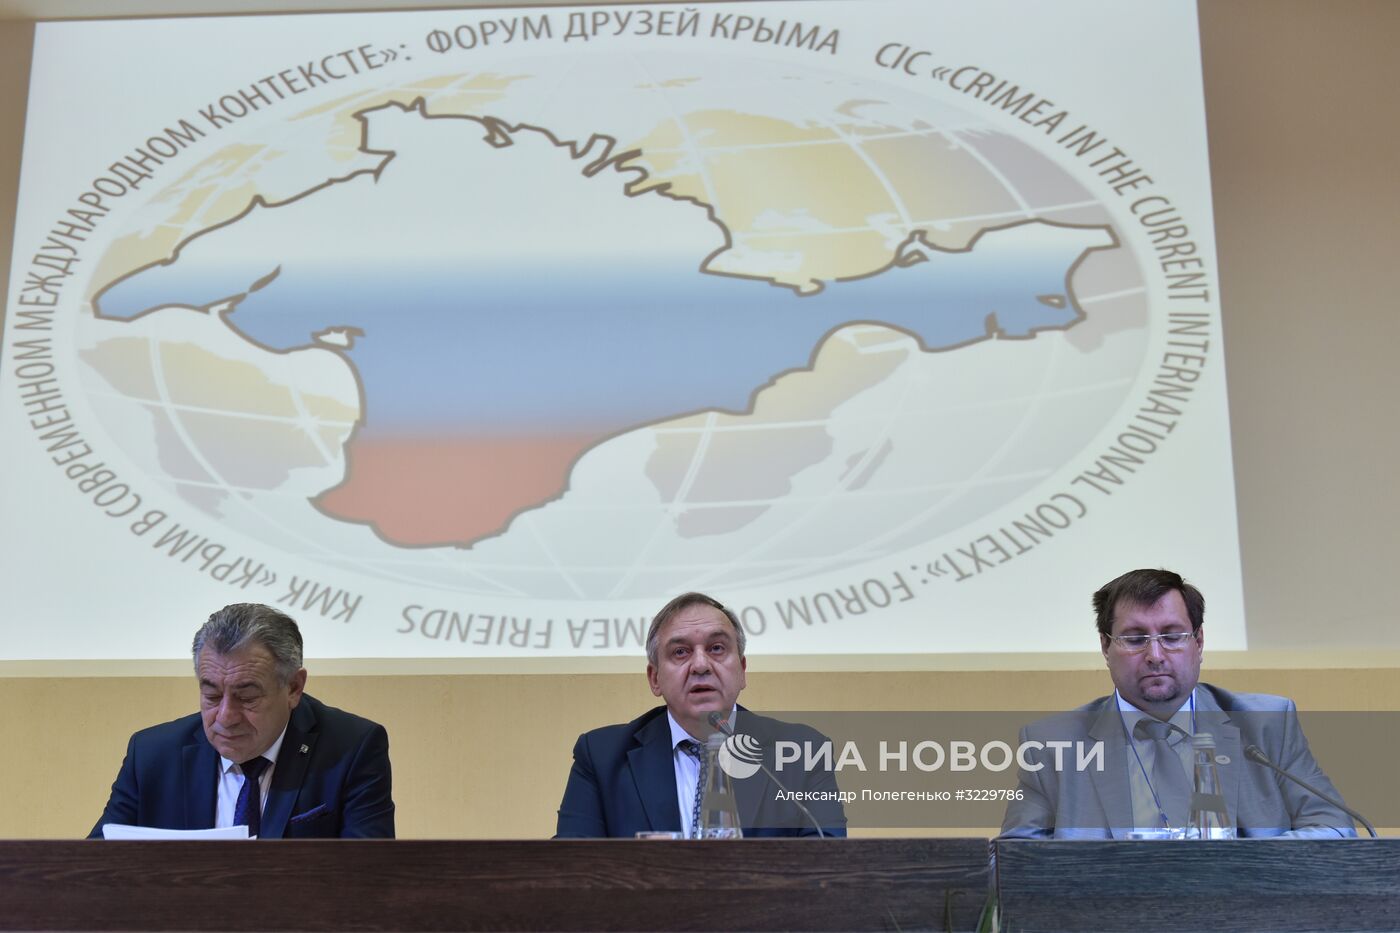 Форум друзей Крыма открылся в Ялте